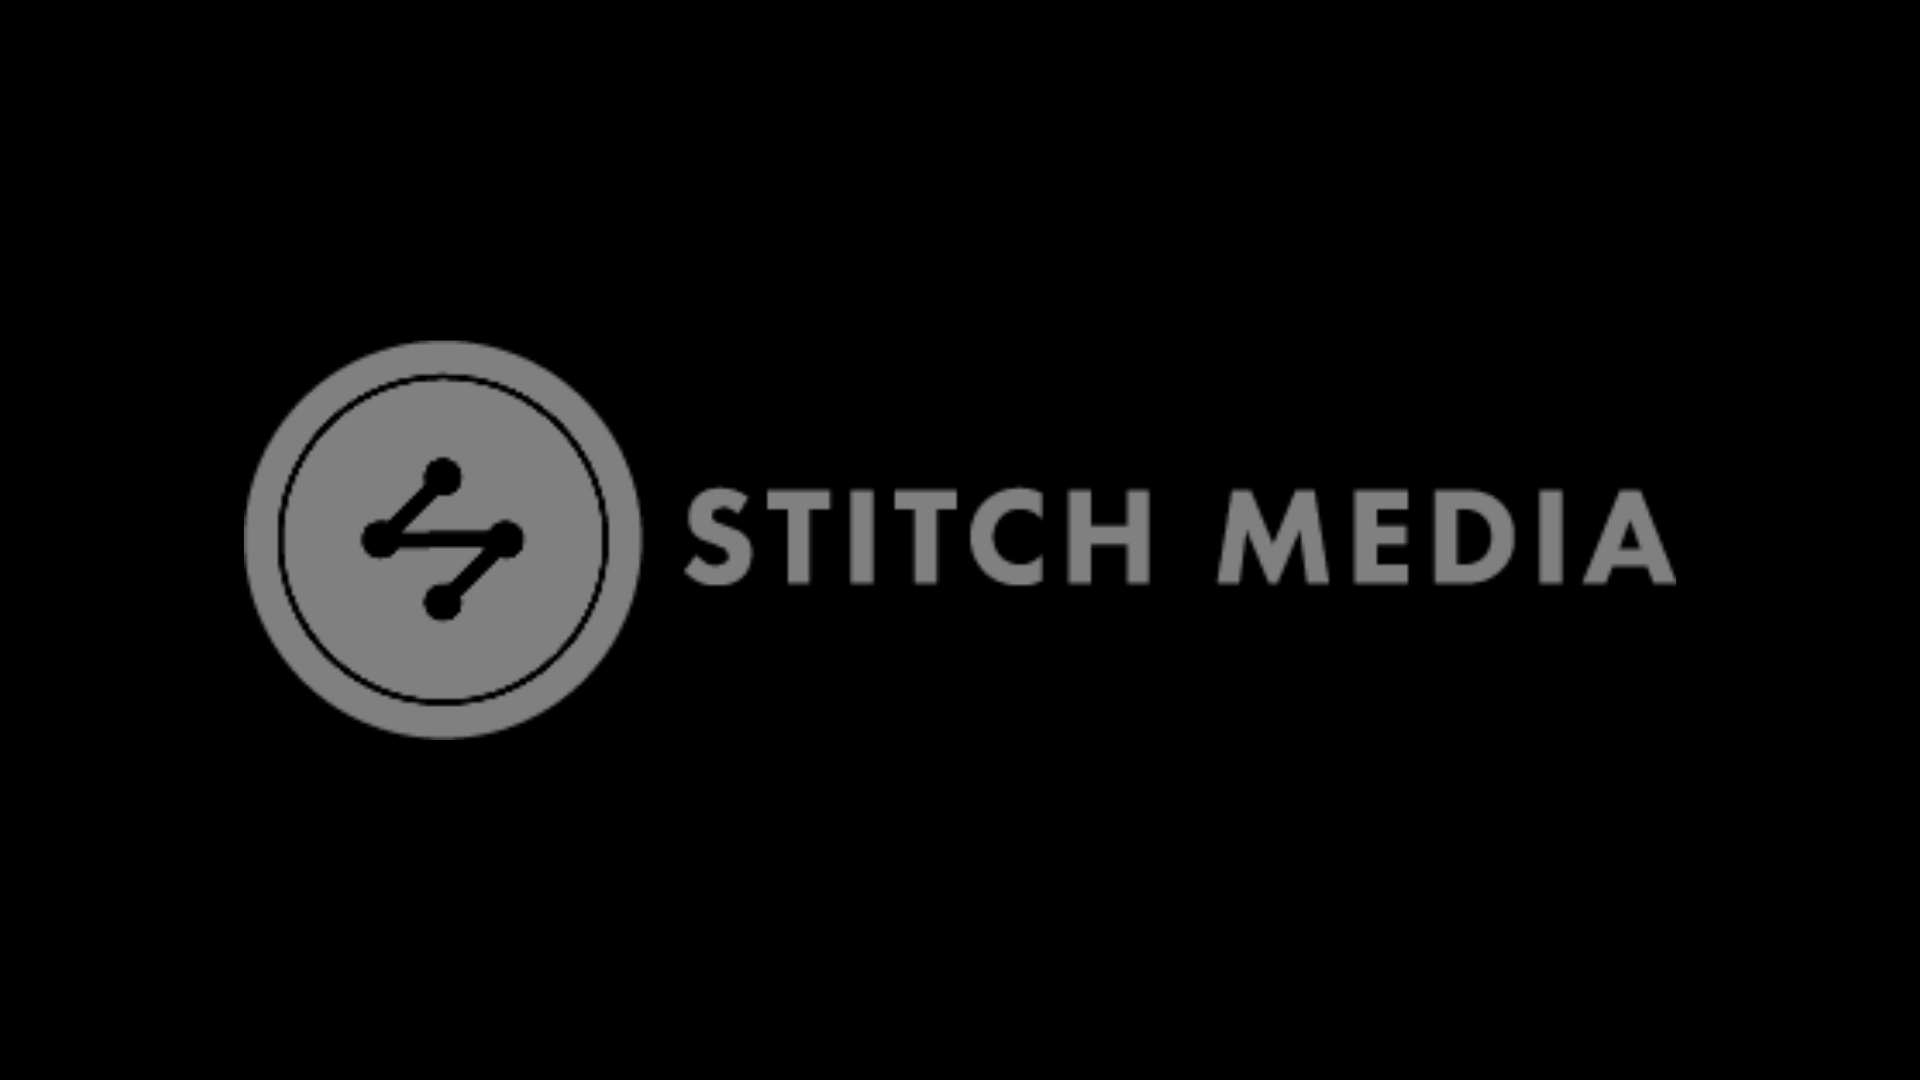 Stitch Media Logo